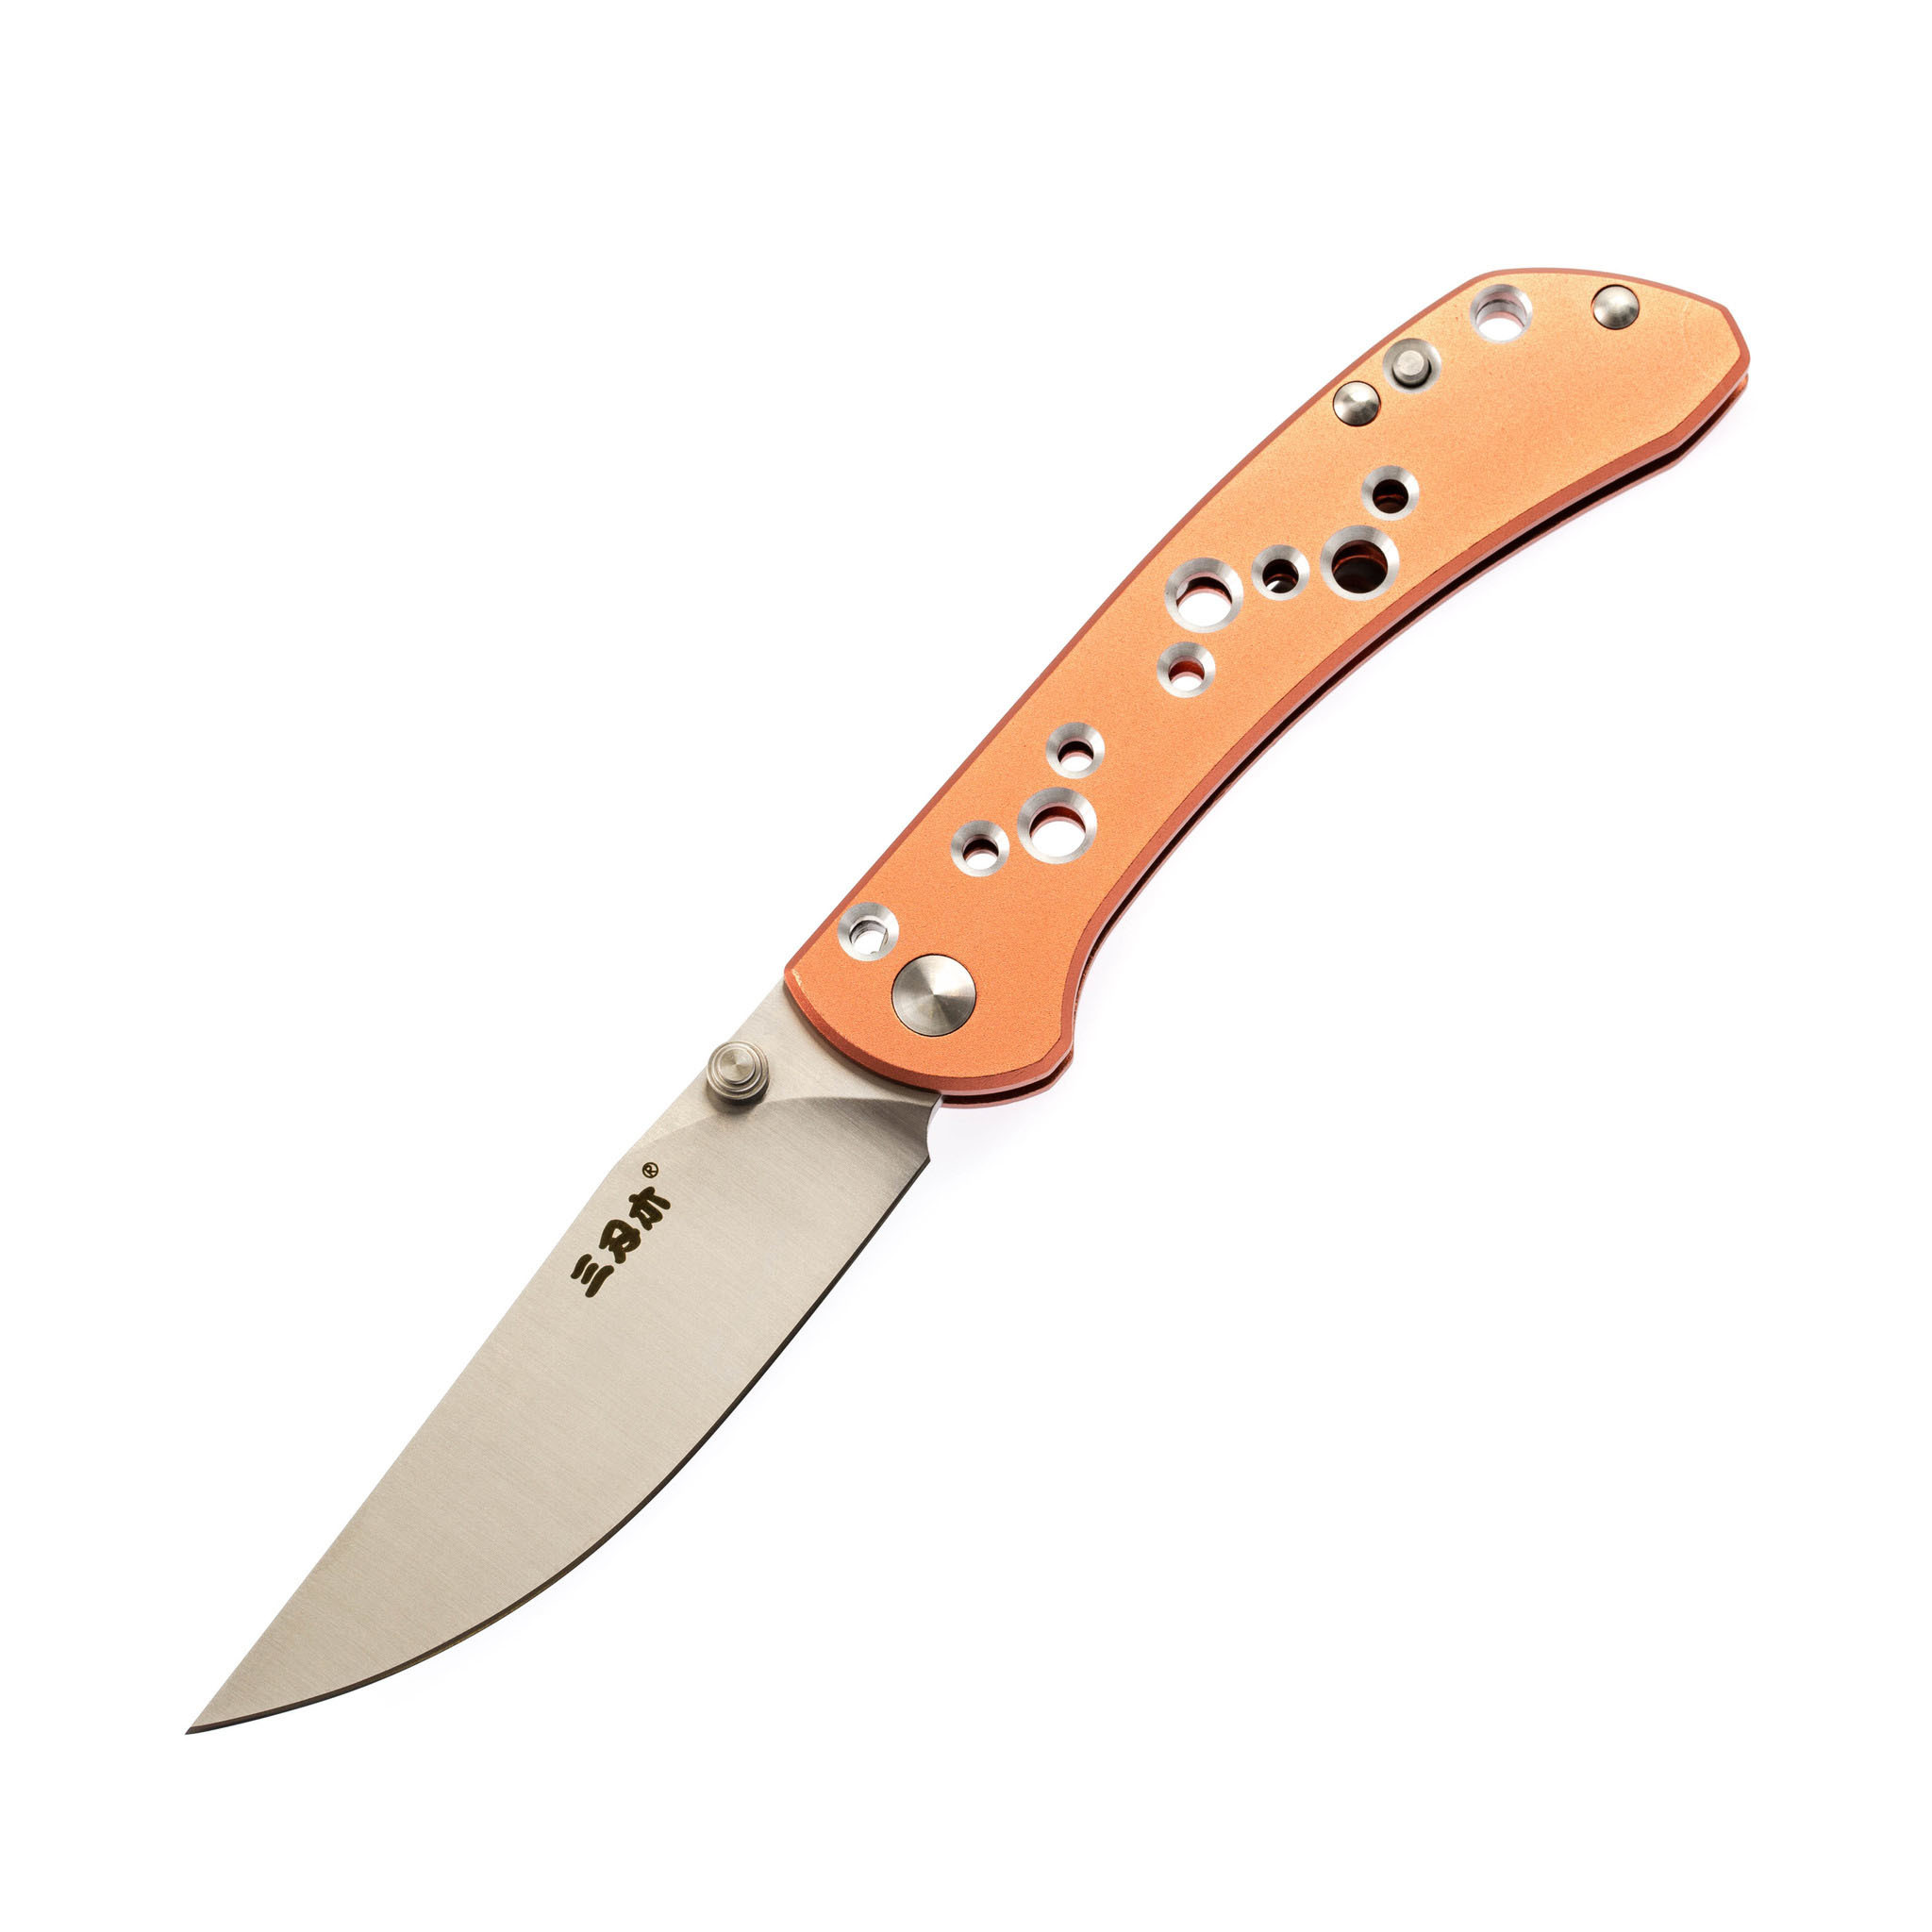 Складной нож Sanrenmu 9165-AW, Бренды, Sanrenmu